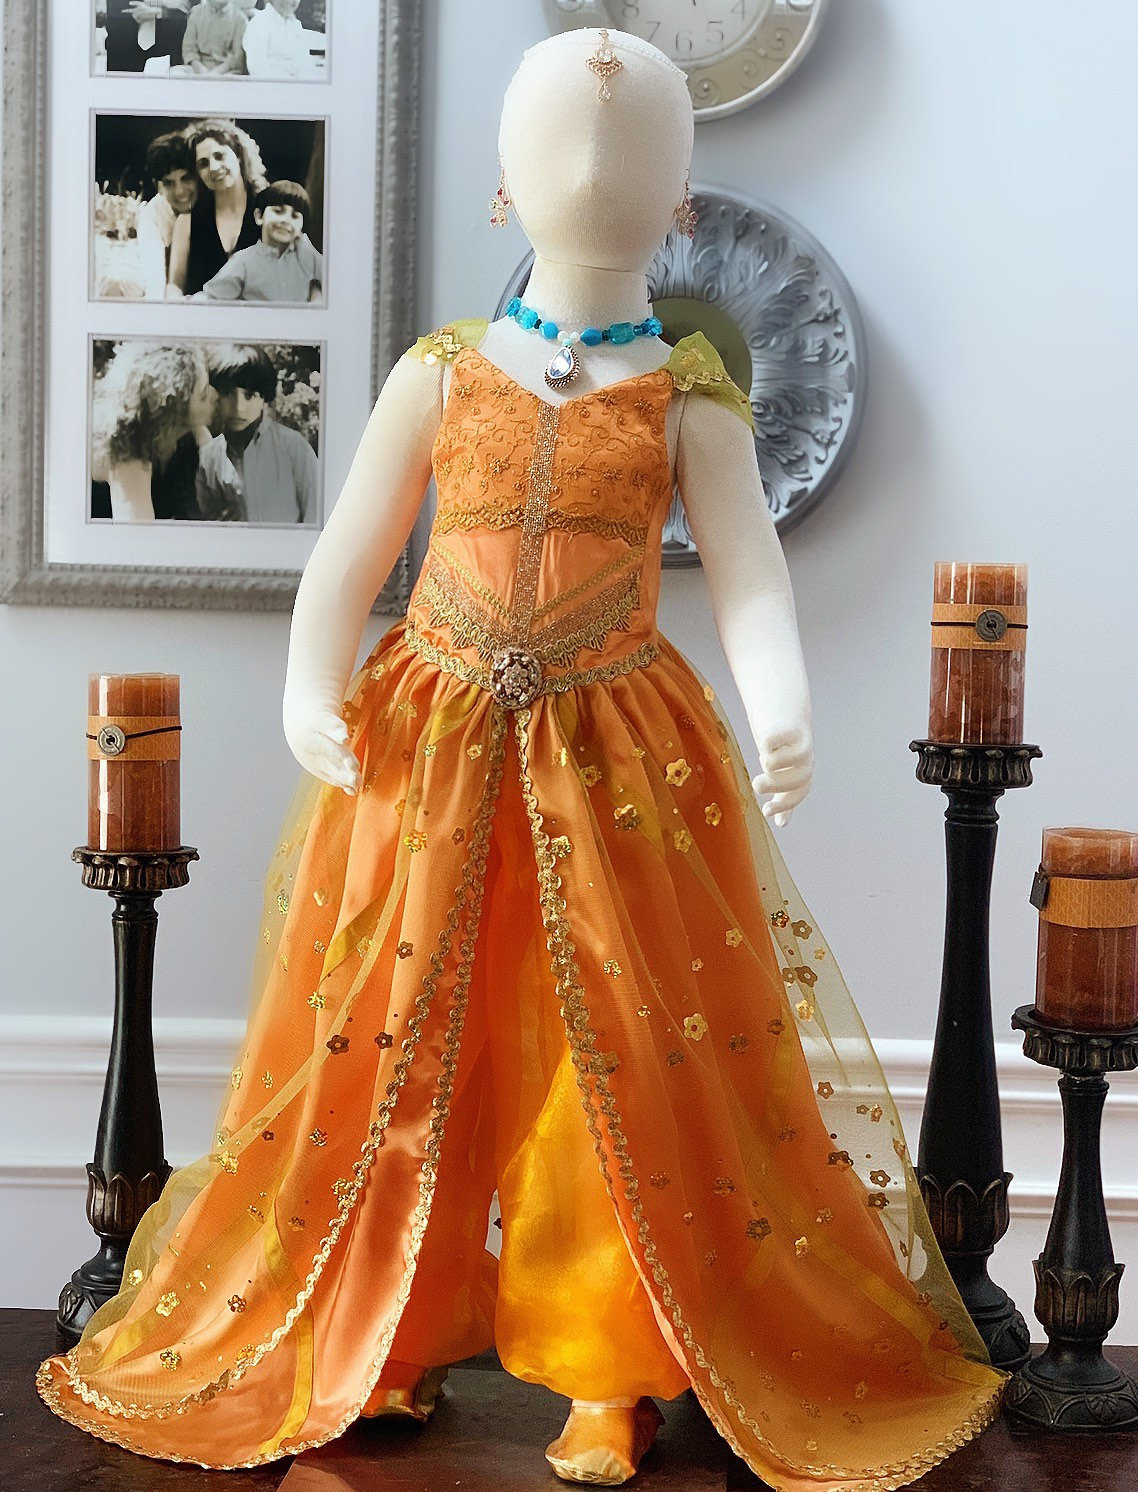 Rijk Gewoon overlopen Detecteren Prinses Jasmine jurk prinses Jasmine kostuum Allading outfit - Etsy België